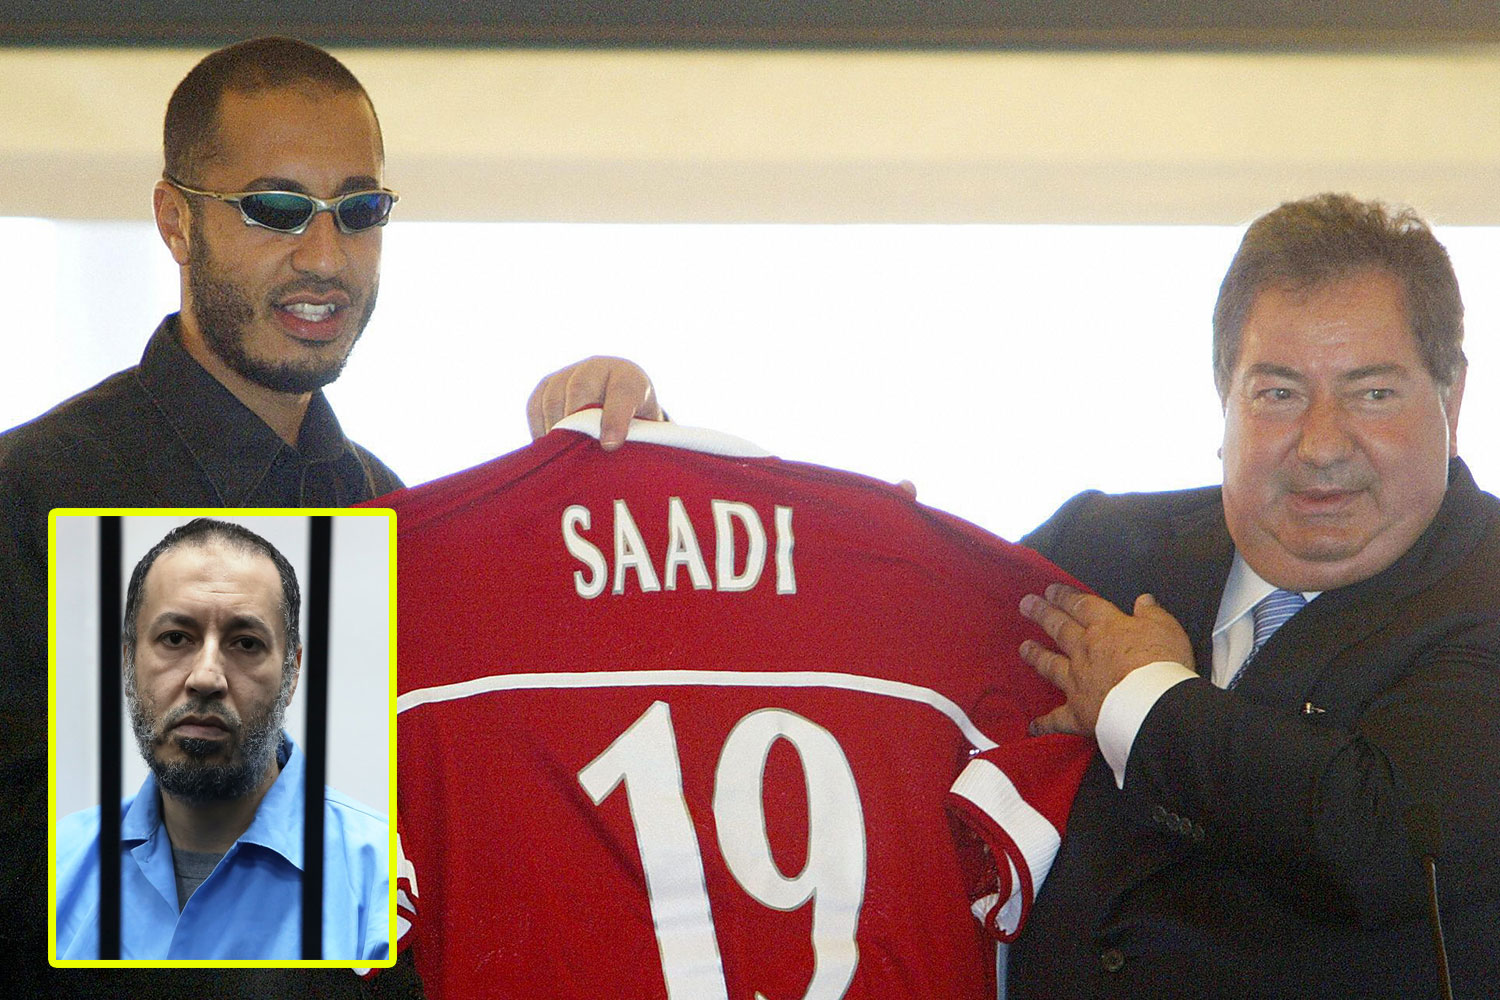 Αλ Σααντί Καντάφι: Ο κακομαθημένος γιος του δικτάτορα που νόμιζε ότι είχε γίνει ποδοσφαιριστής